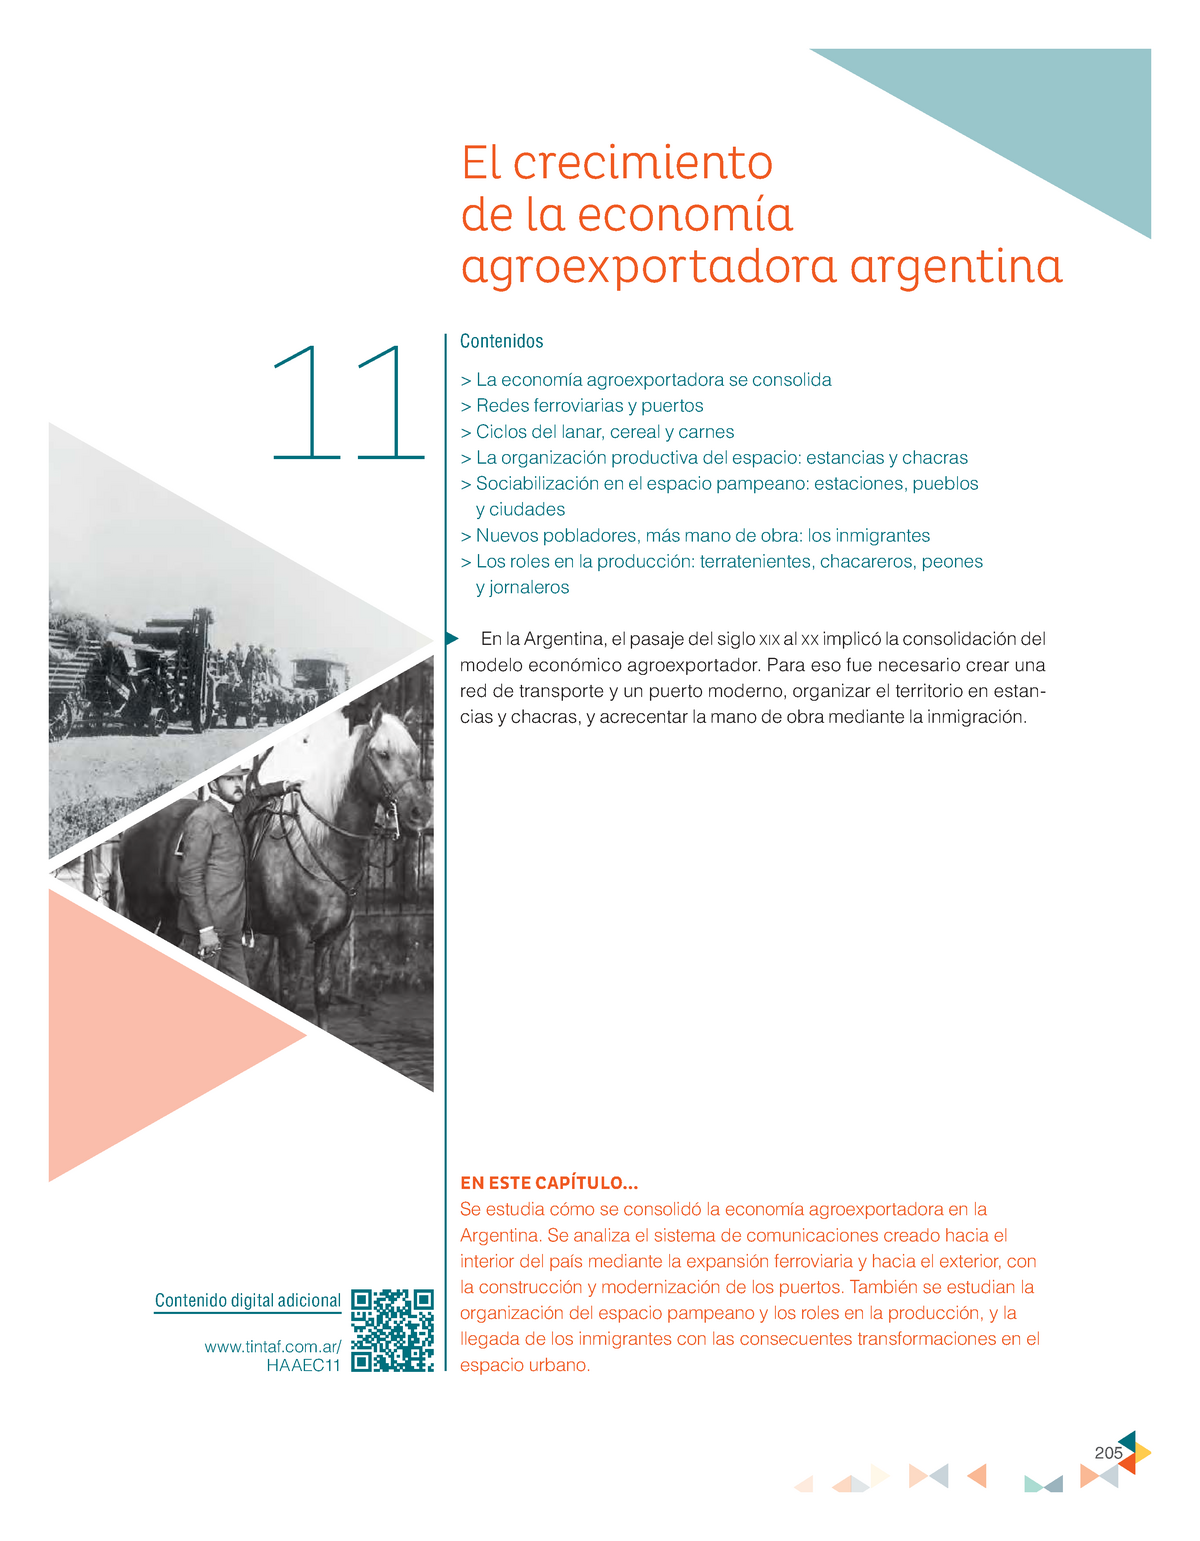 Historia-IV 4to-1era Clase-1 Modelo-Agroexportador Antoniasi - ####### EN  ESTE CAPÍTULO... 11 El - Studocu